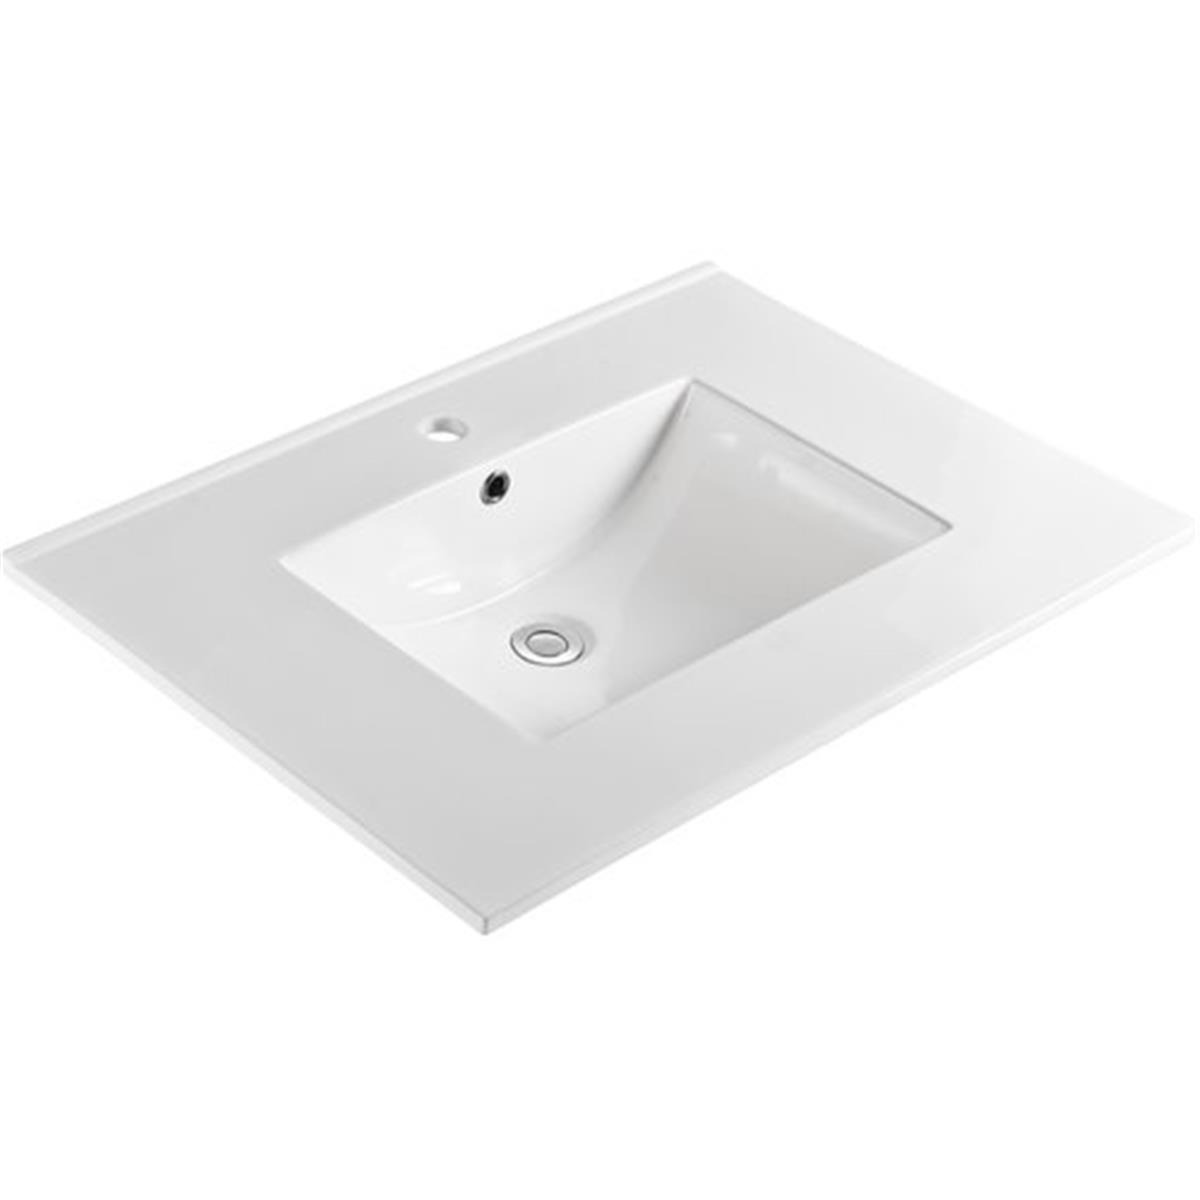 Bellaterra Home 303122-a 31 In. Single Sink Ceramic Top